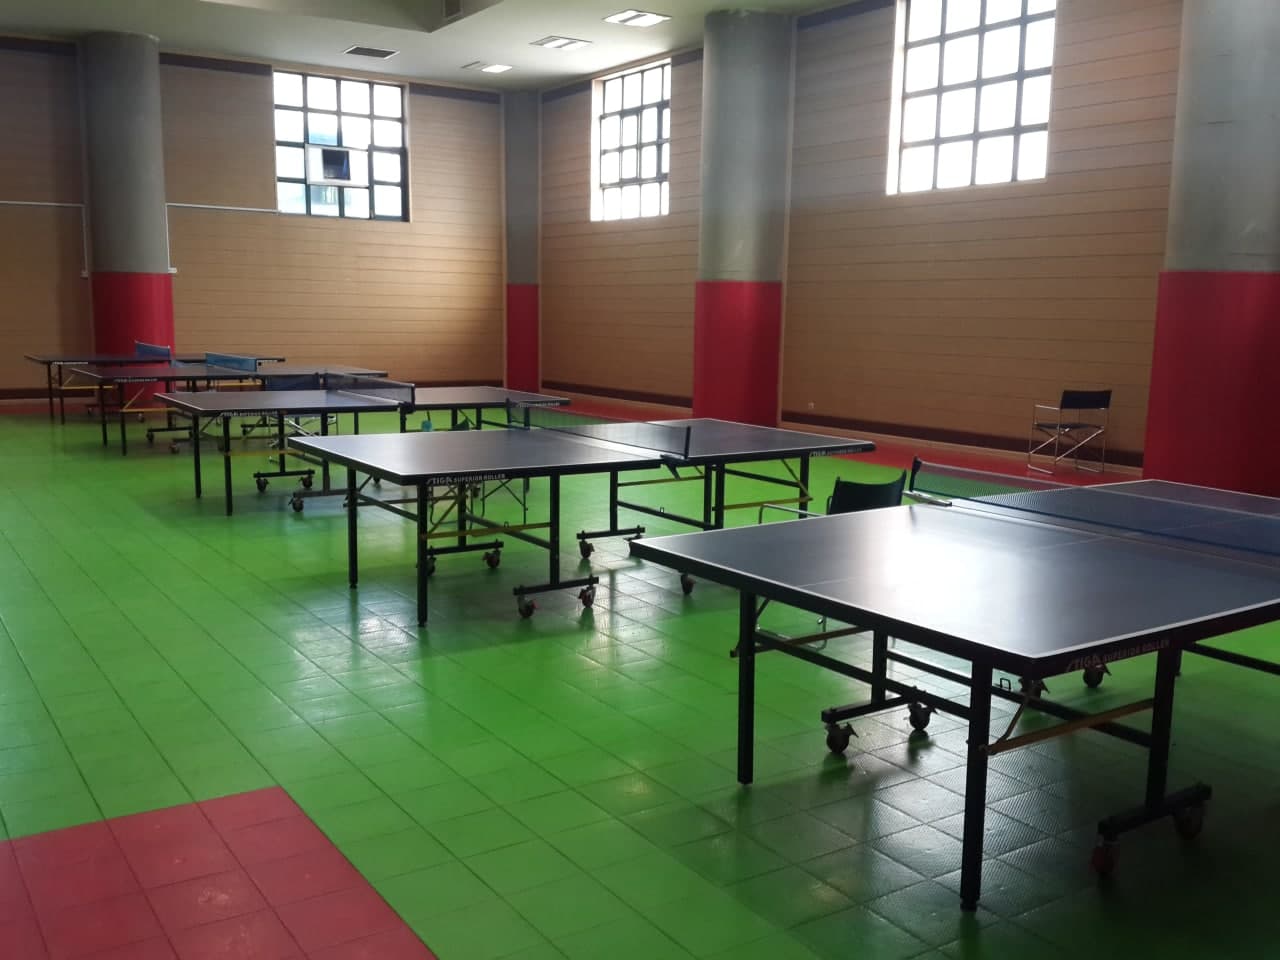 باشگاه سالن تنیس روی میز (صنعتی شریف) در ستاو